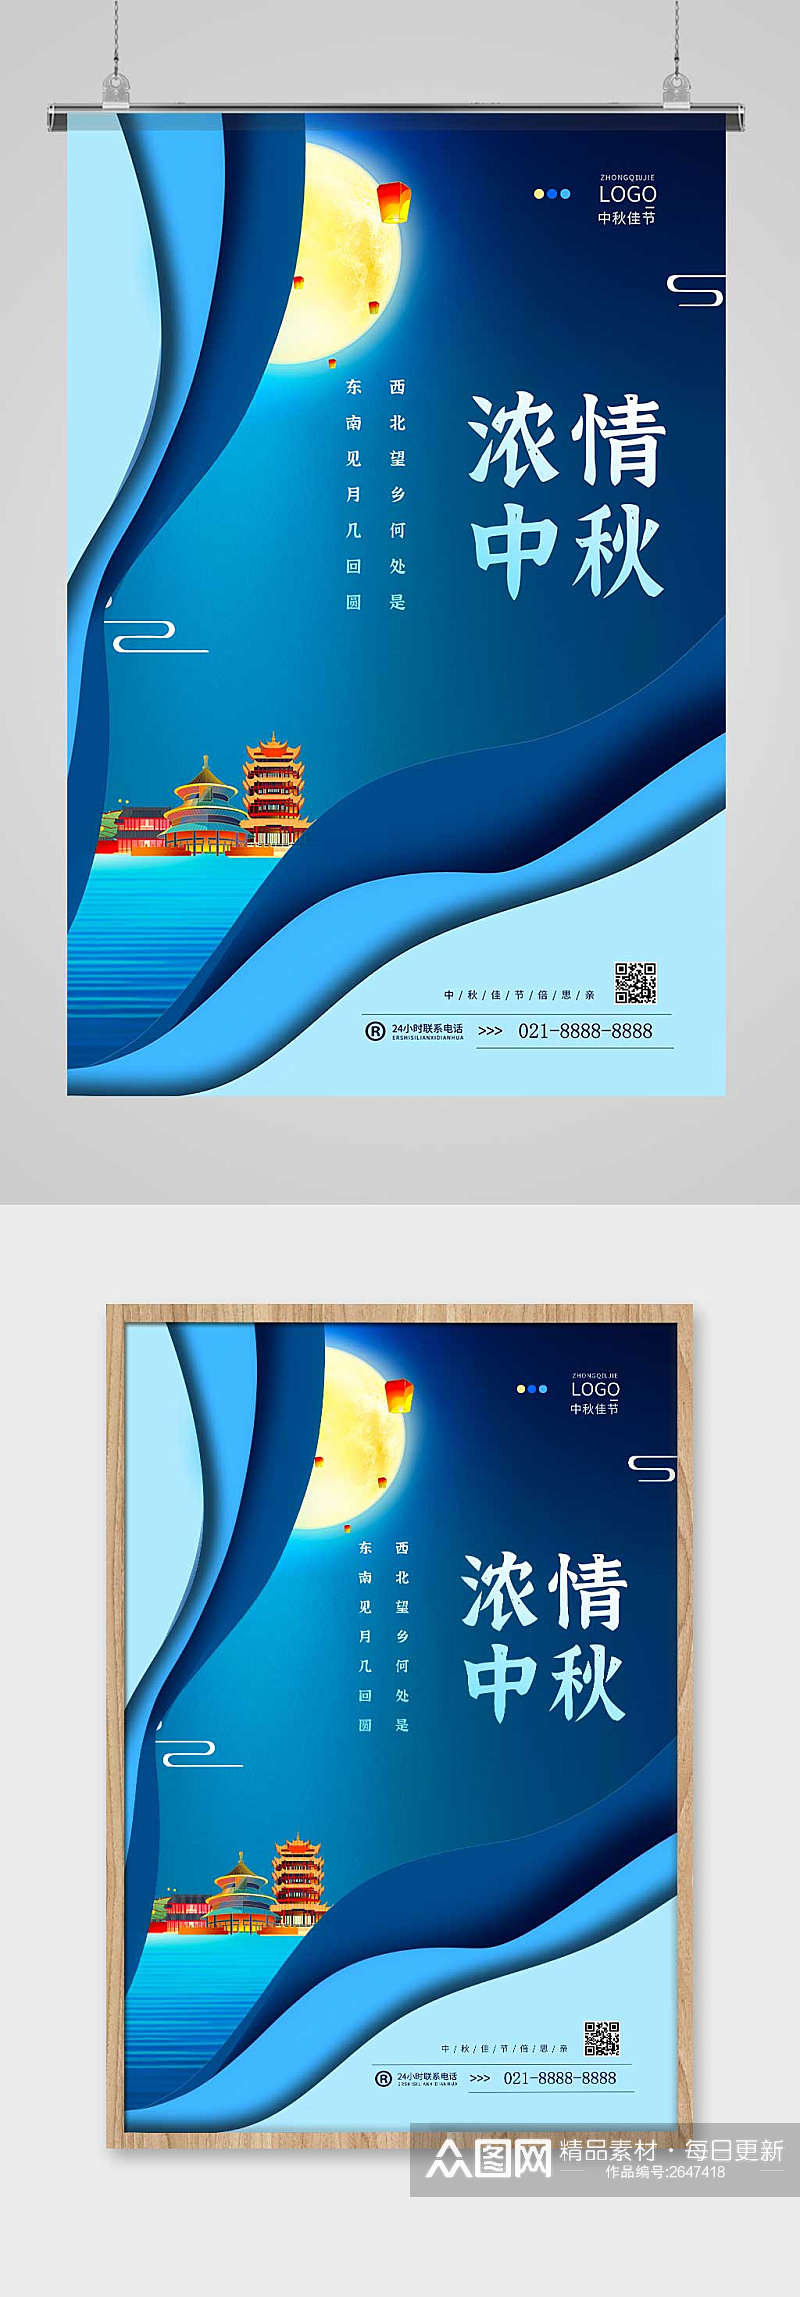 深色质感大气中秋节创意宣传海报设计素材